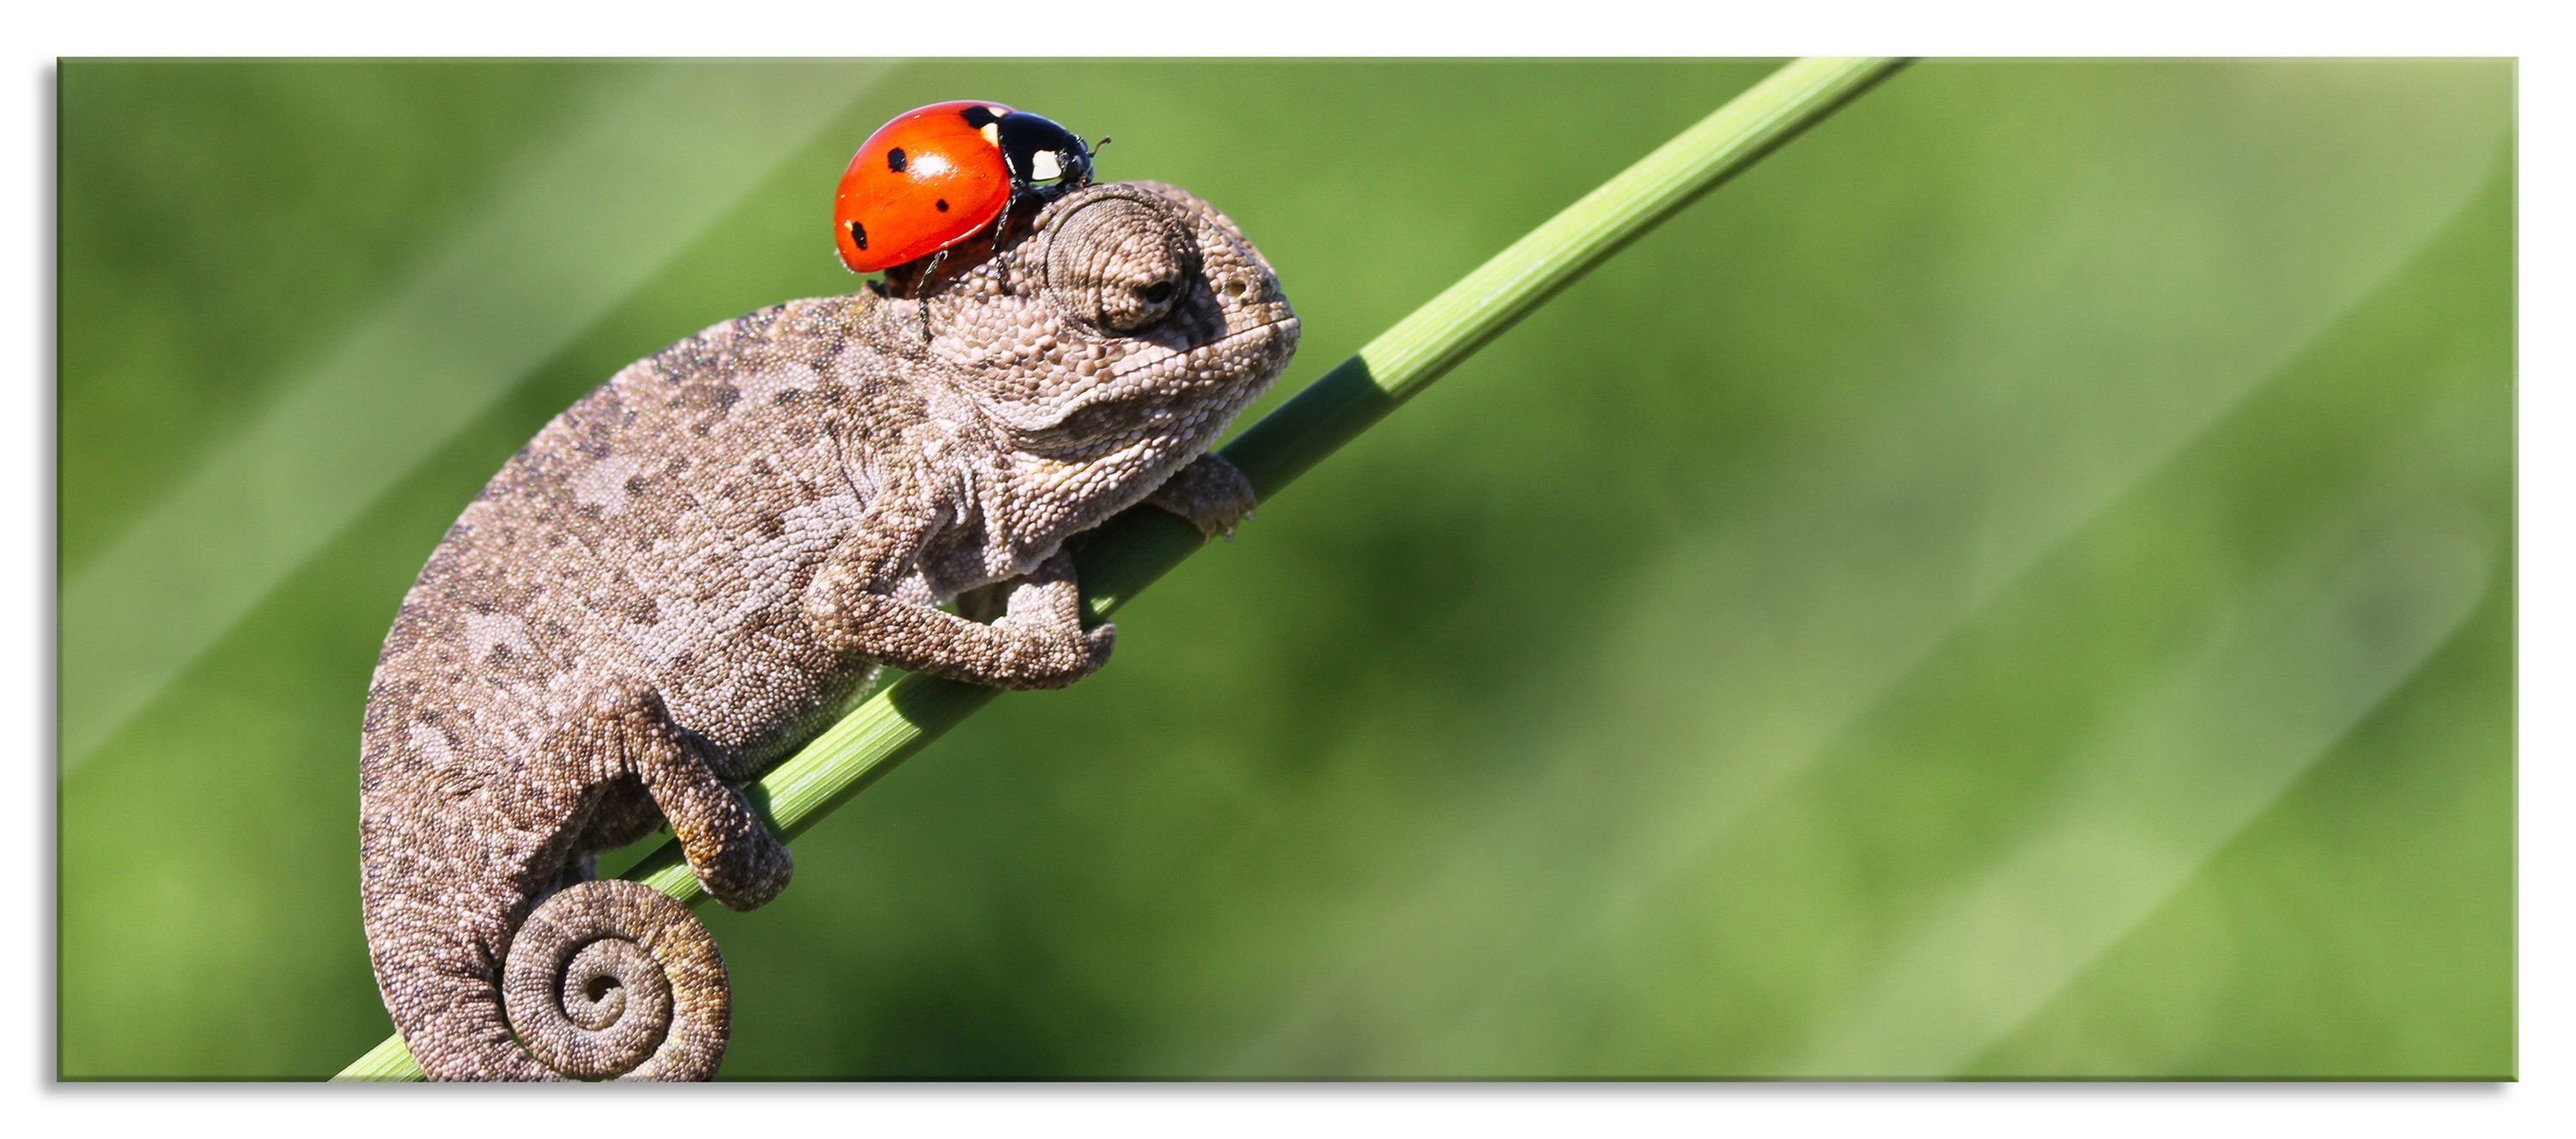 Pixxprint Glasbild Süßer Gecko mit einem Marienkäfer, Süßer Gecko mit einem Marienkäfer (1 St), Glasbild aus Echtglas, inkl. Aufhängungen und Abstandshalter | Bilder